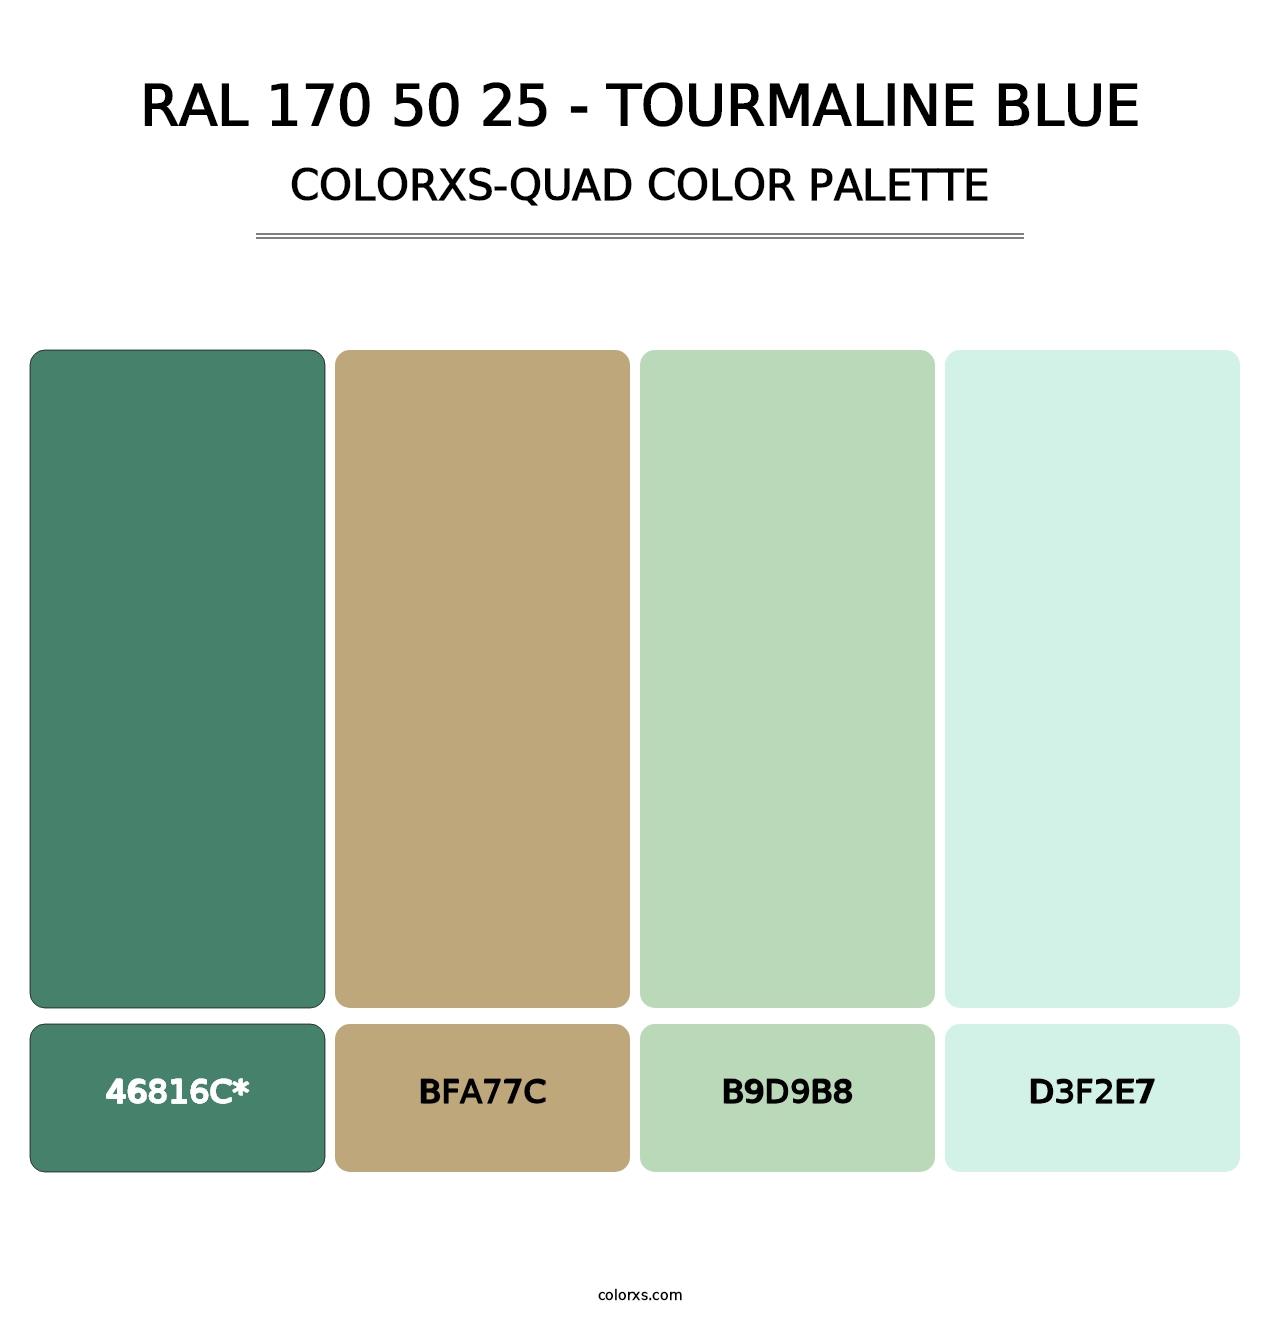 RAL 170 50 25 - Tourmaline Blue - Colorxs Quad Palette